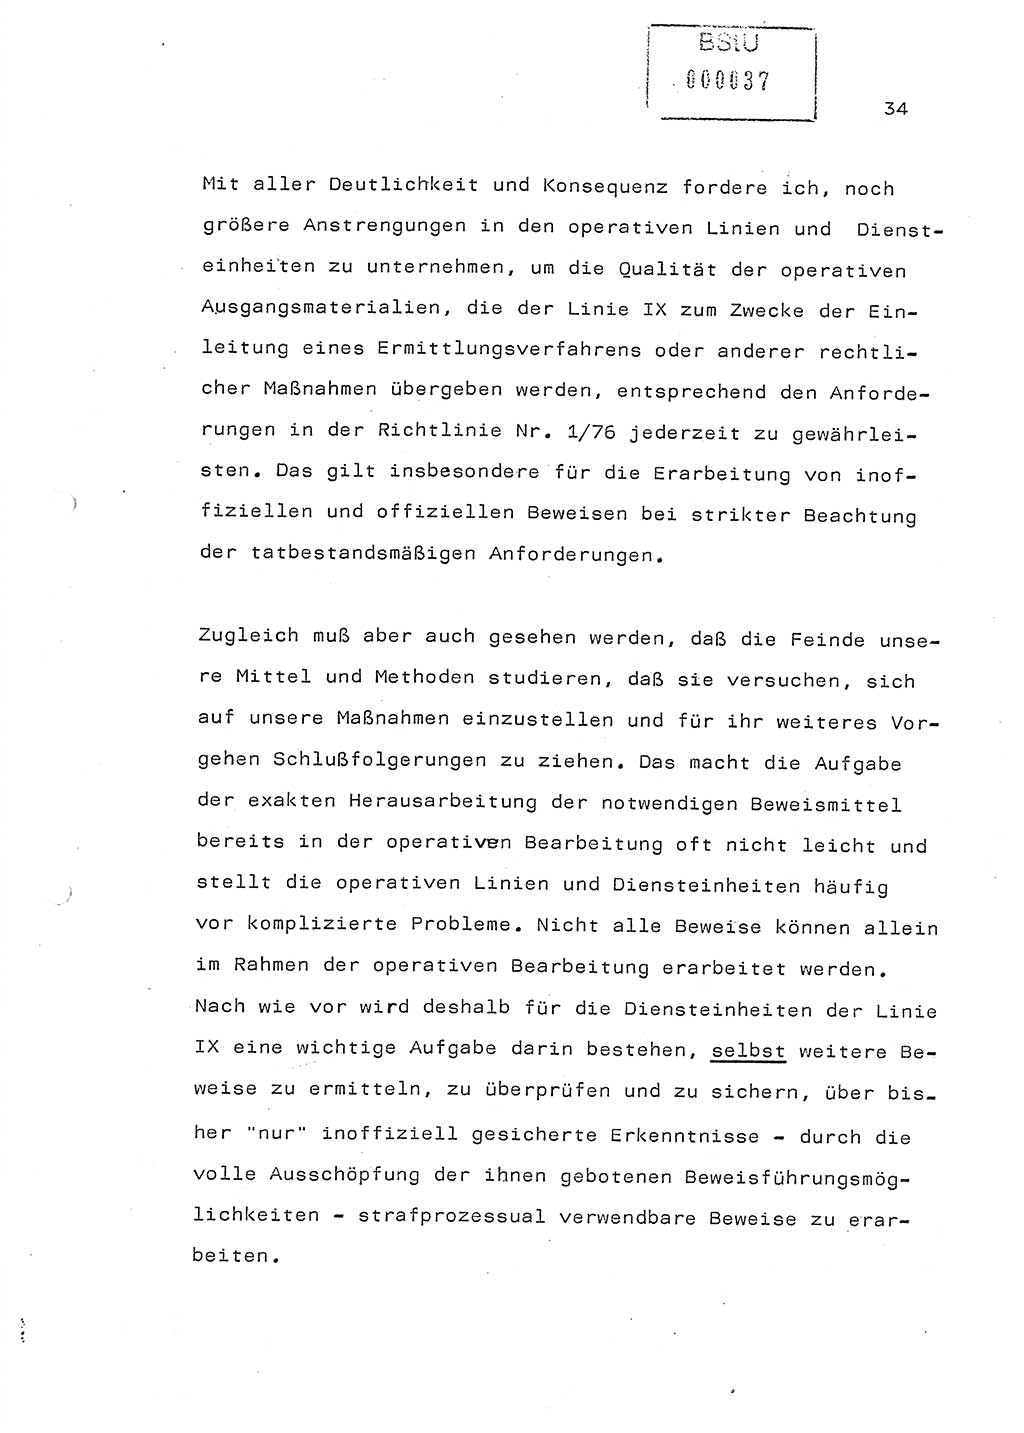 Referat (Generaloberst Erich Mielke) auf der Zentralen Dienstkonferenz am 24.5.1979 [Ministerium für Staatssicherheit (MfS), Deutsche Demokratische Republik (DDR), Der Minister], Berlin 1979, Seite 34 (Ref. DK DDR MfS Min. /79 1979, S. 34)